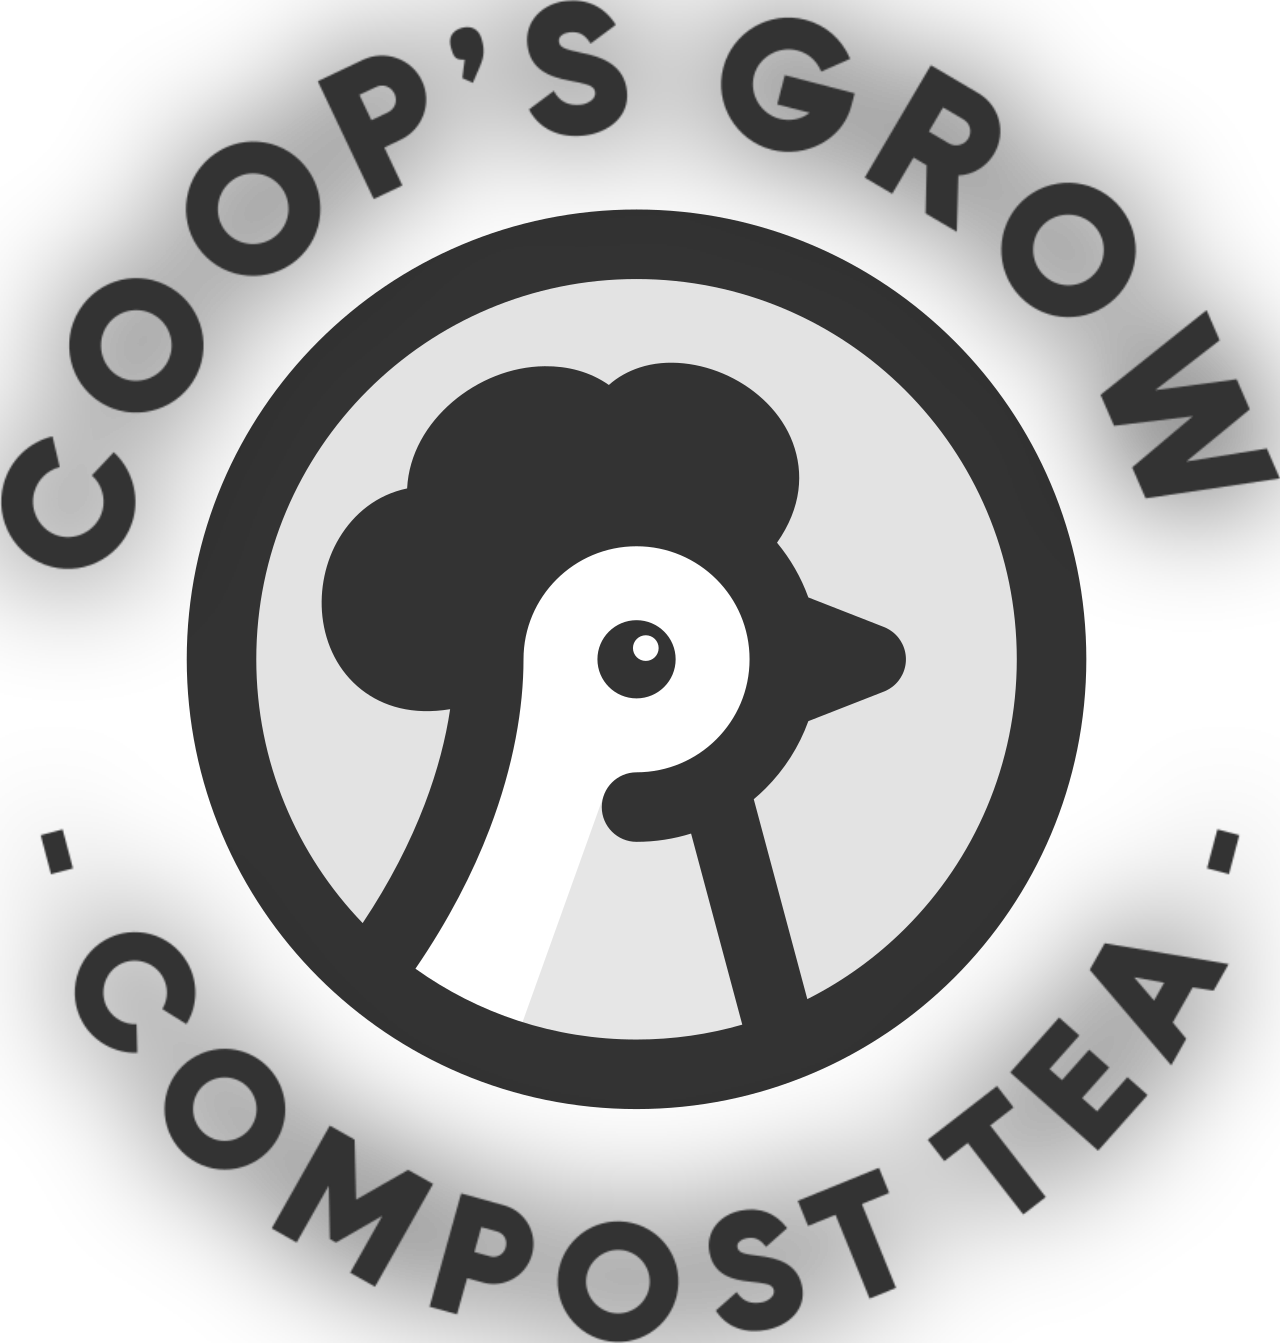 COOP’S GROW 's logo